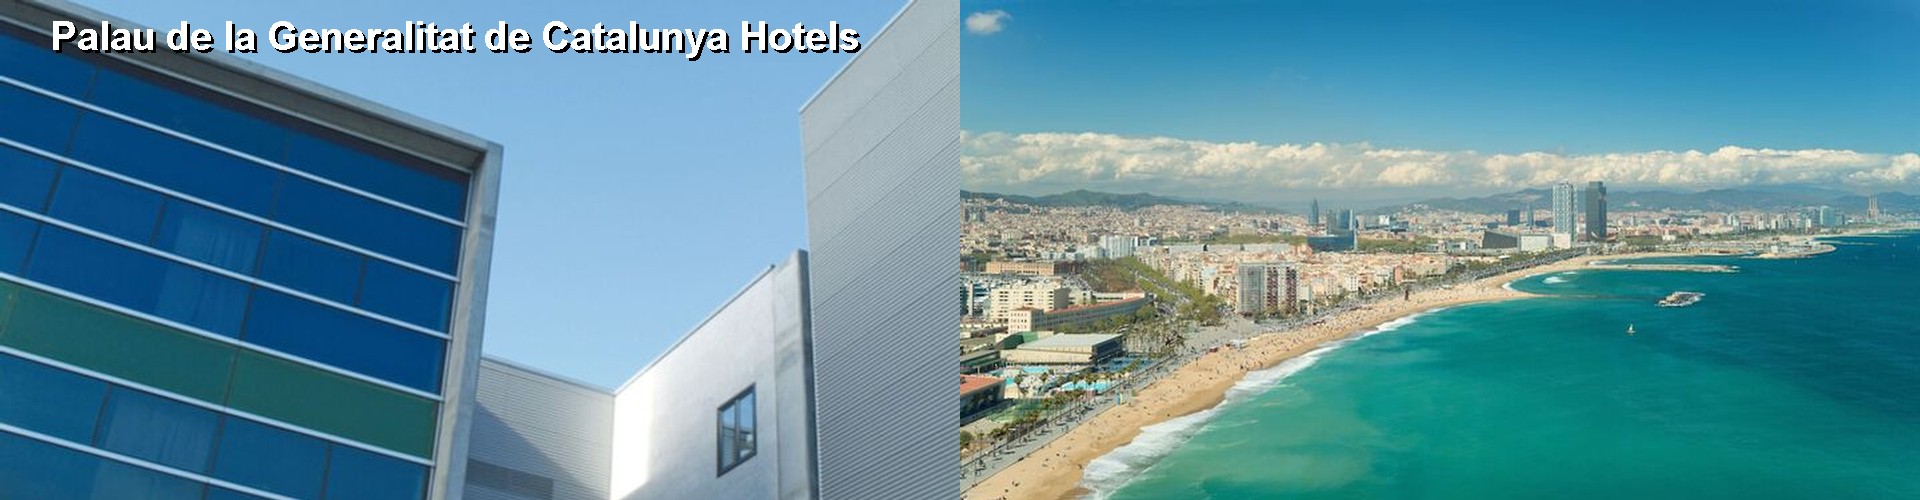 5 Best Hotels near Palau de la Generalitat de Catalunya